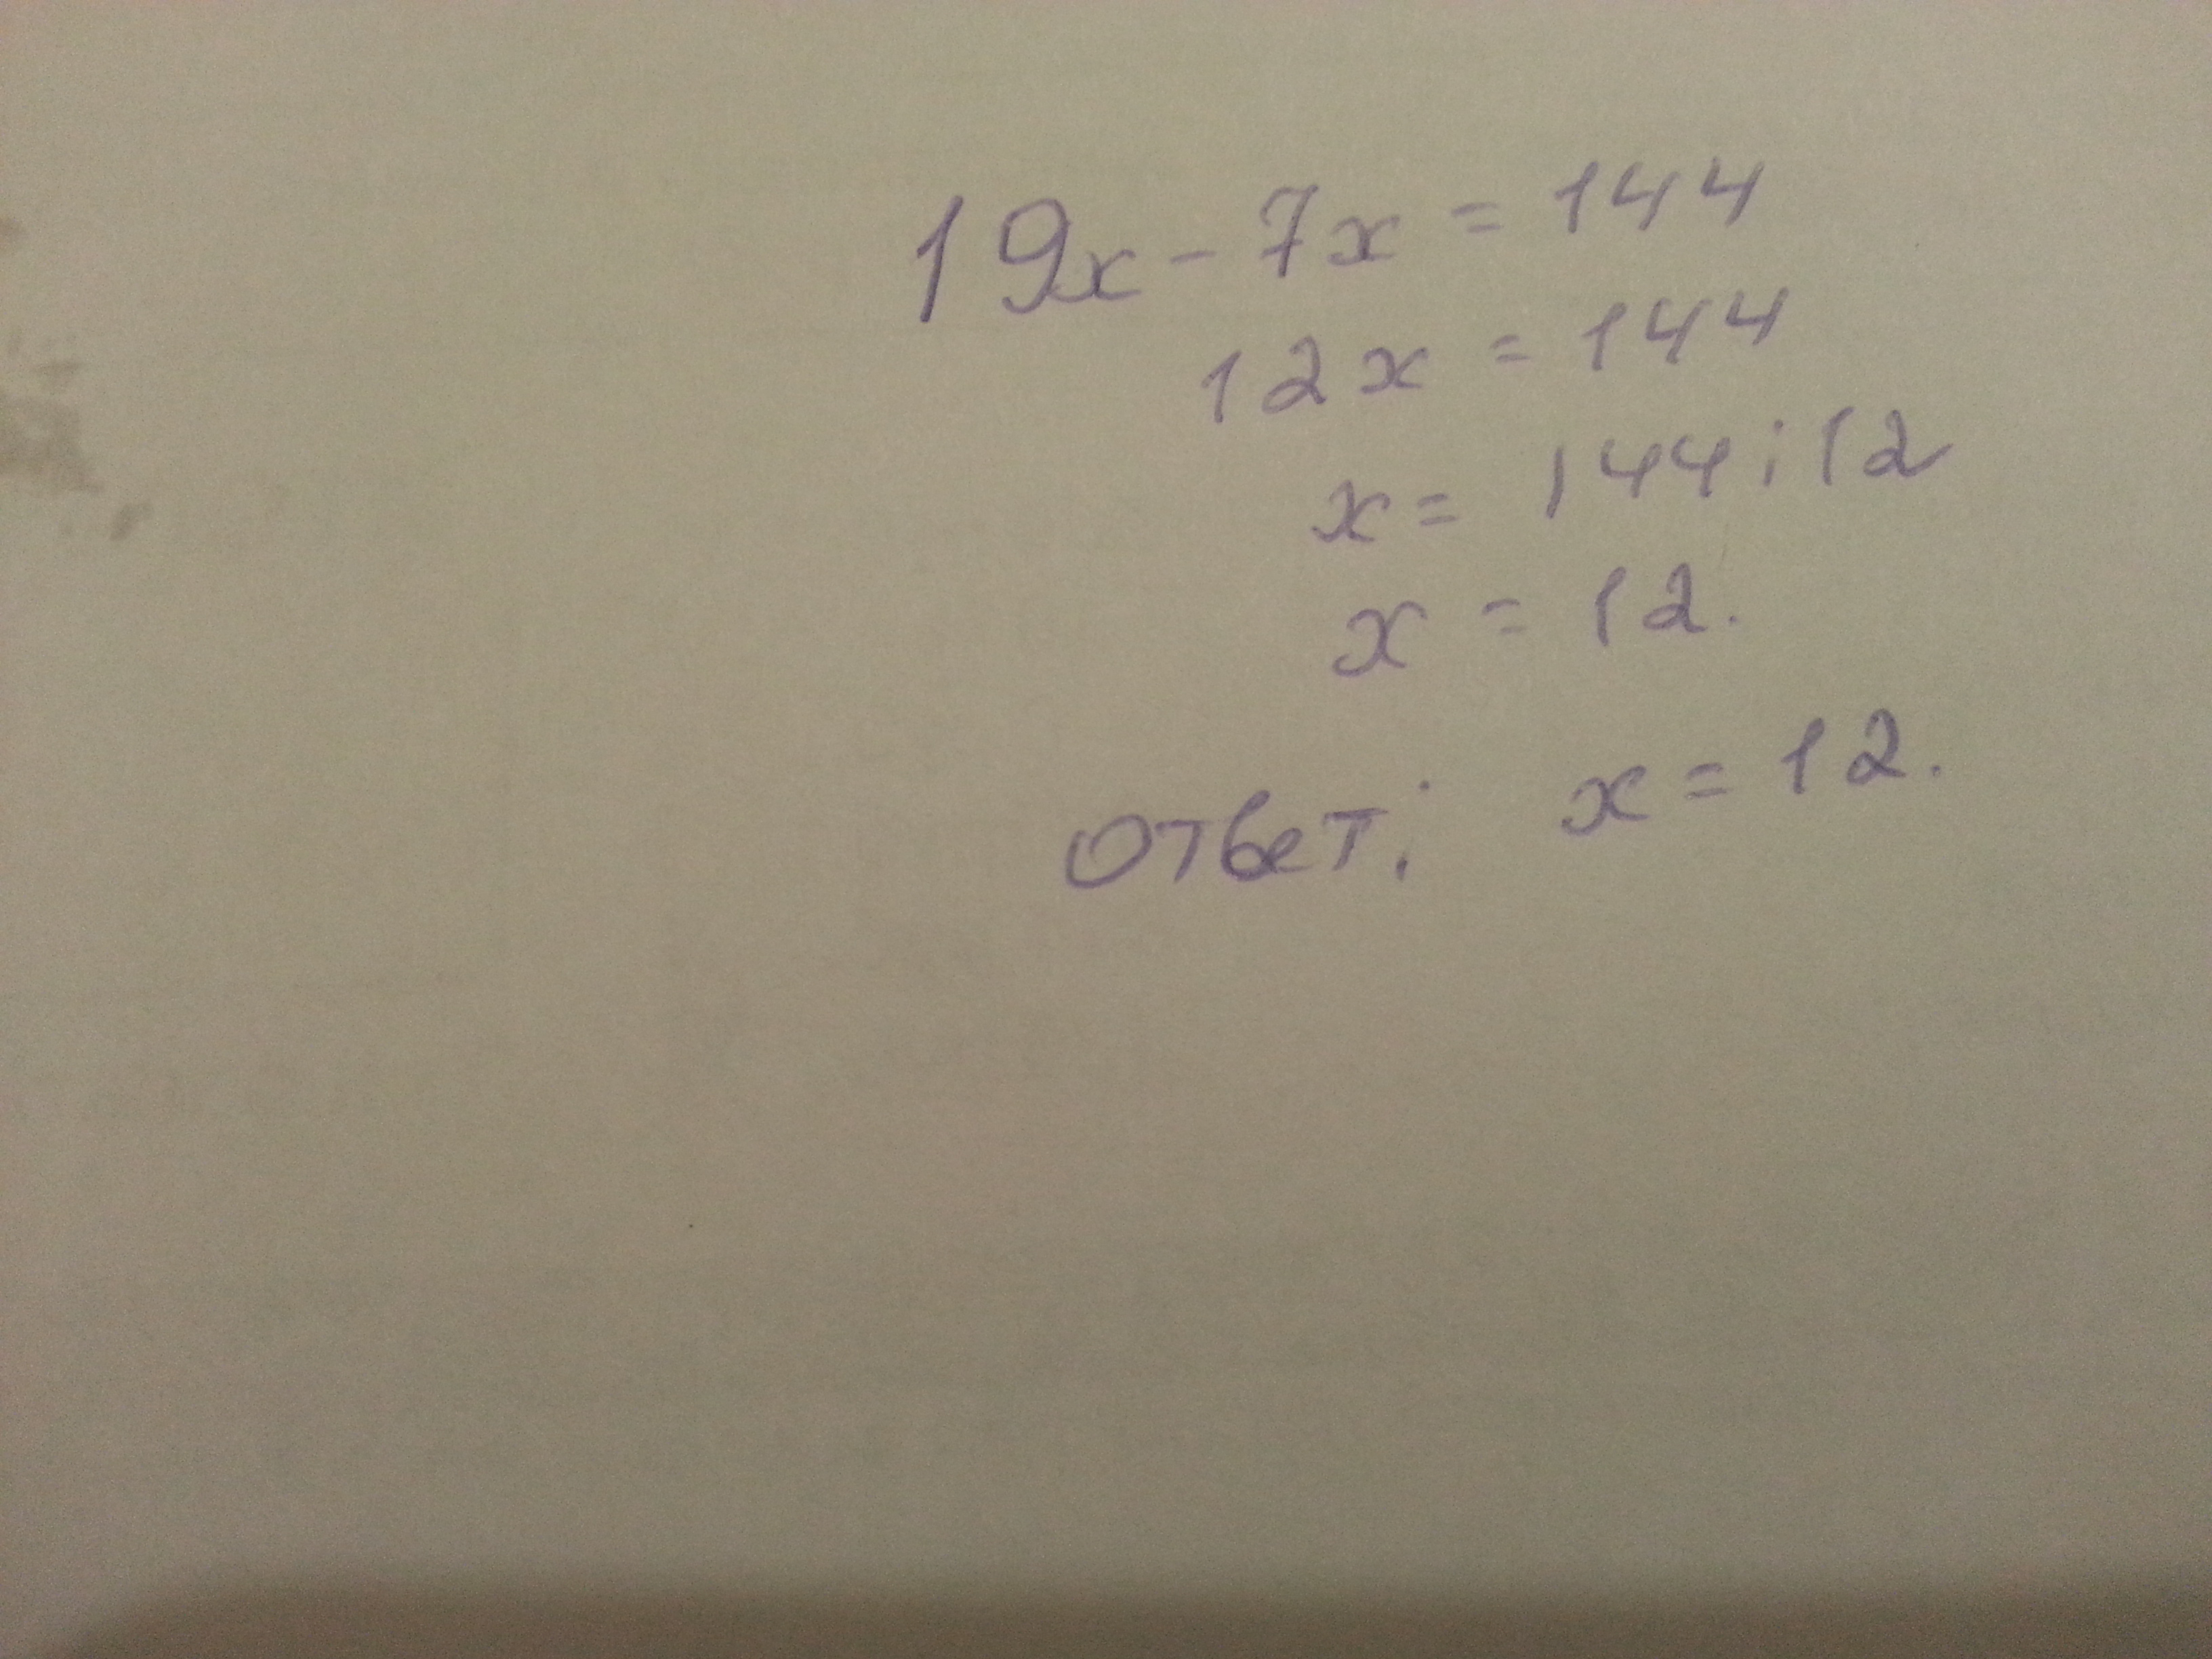 Х 7 30 9. 19х-7х 144. 19х 7х 144 решение. Решение уравнения 19x-7x 144. 19x-7x=144.